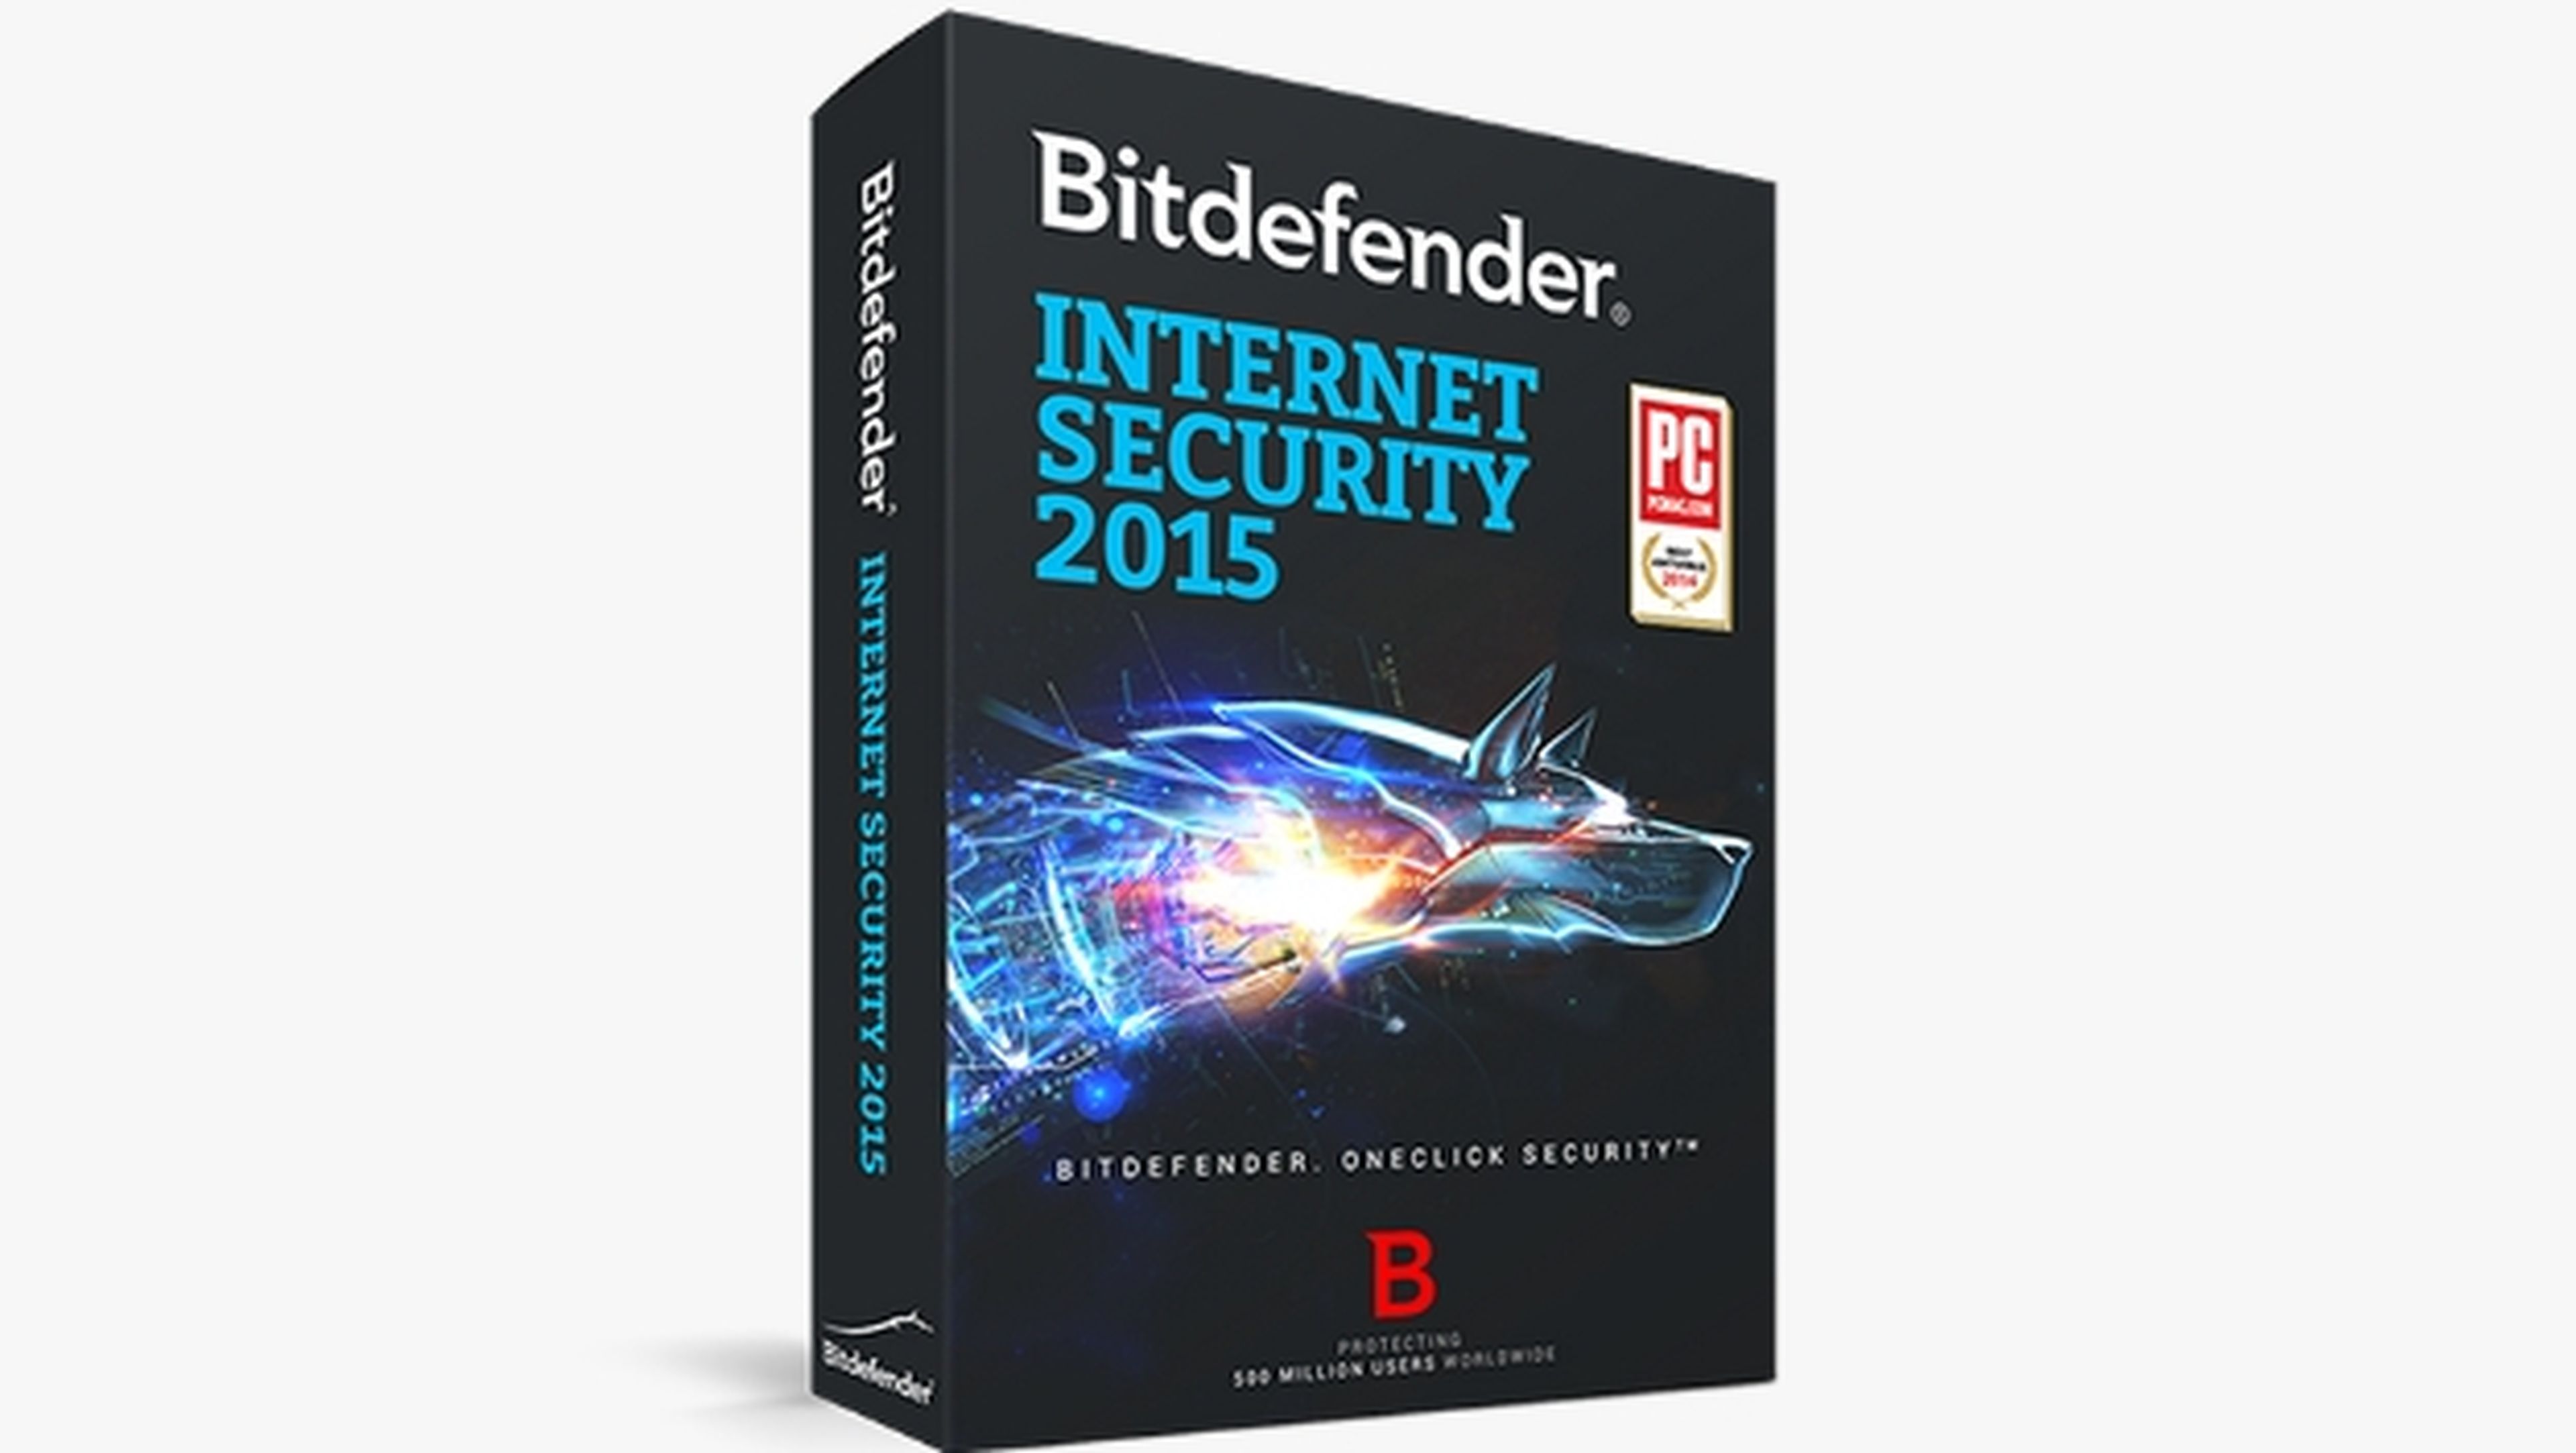 Bitdefender Internet Security 2015, protección total con una suite de seguridad que bloquea los virus, malware, phishing, cuentas bancarias, y otras amenazas.